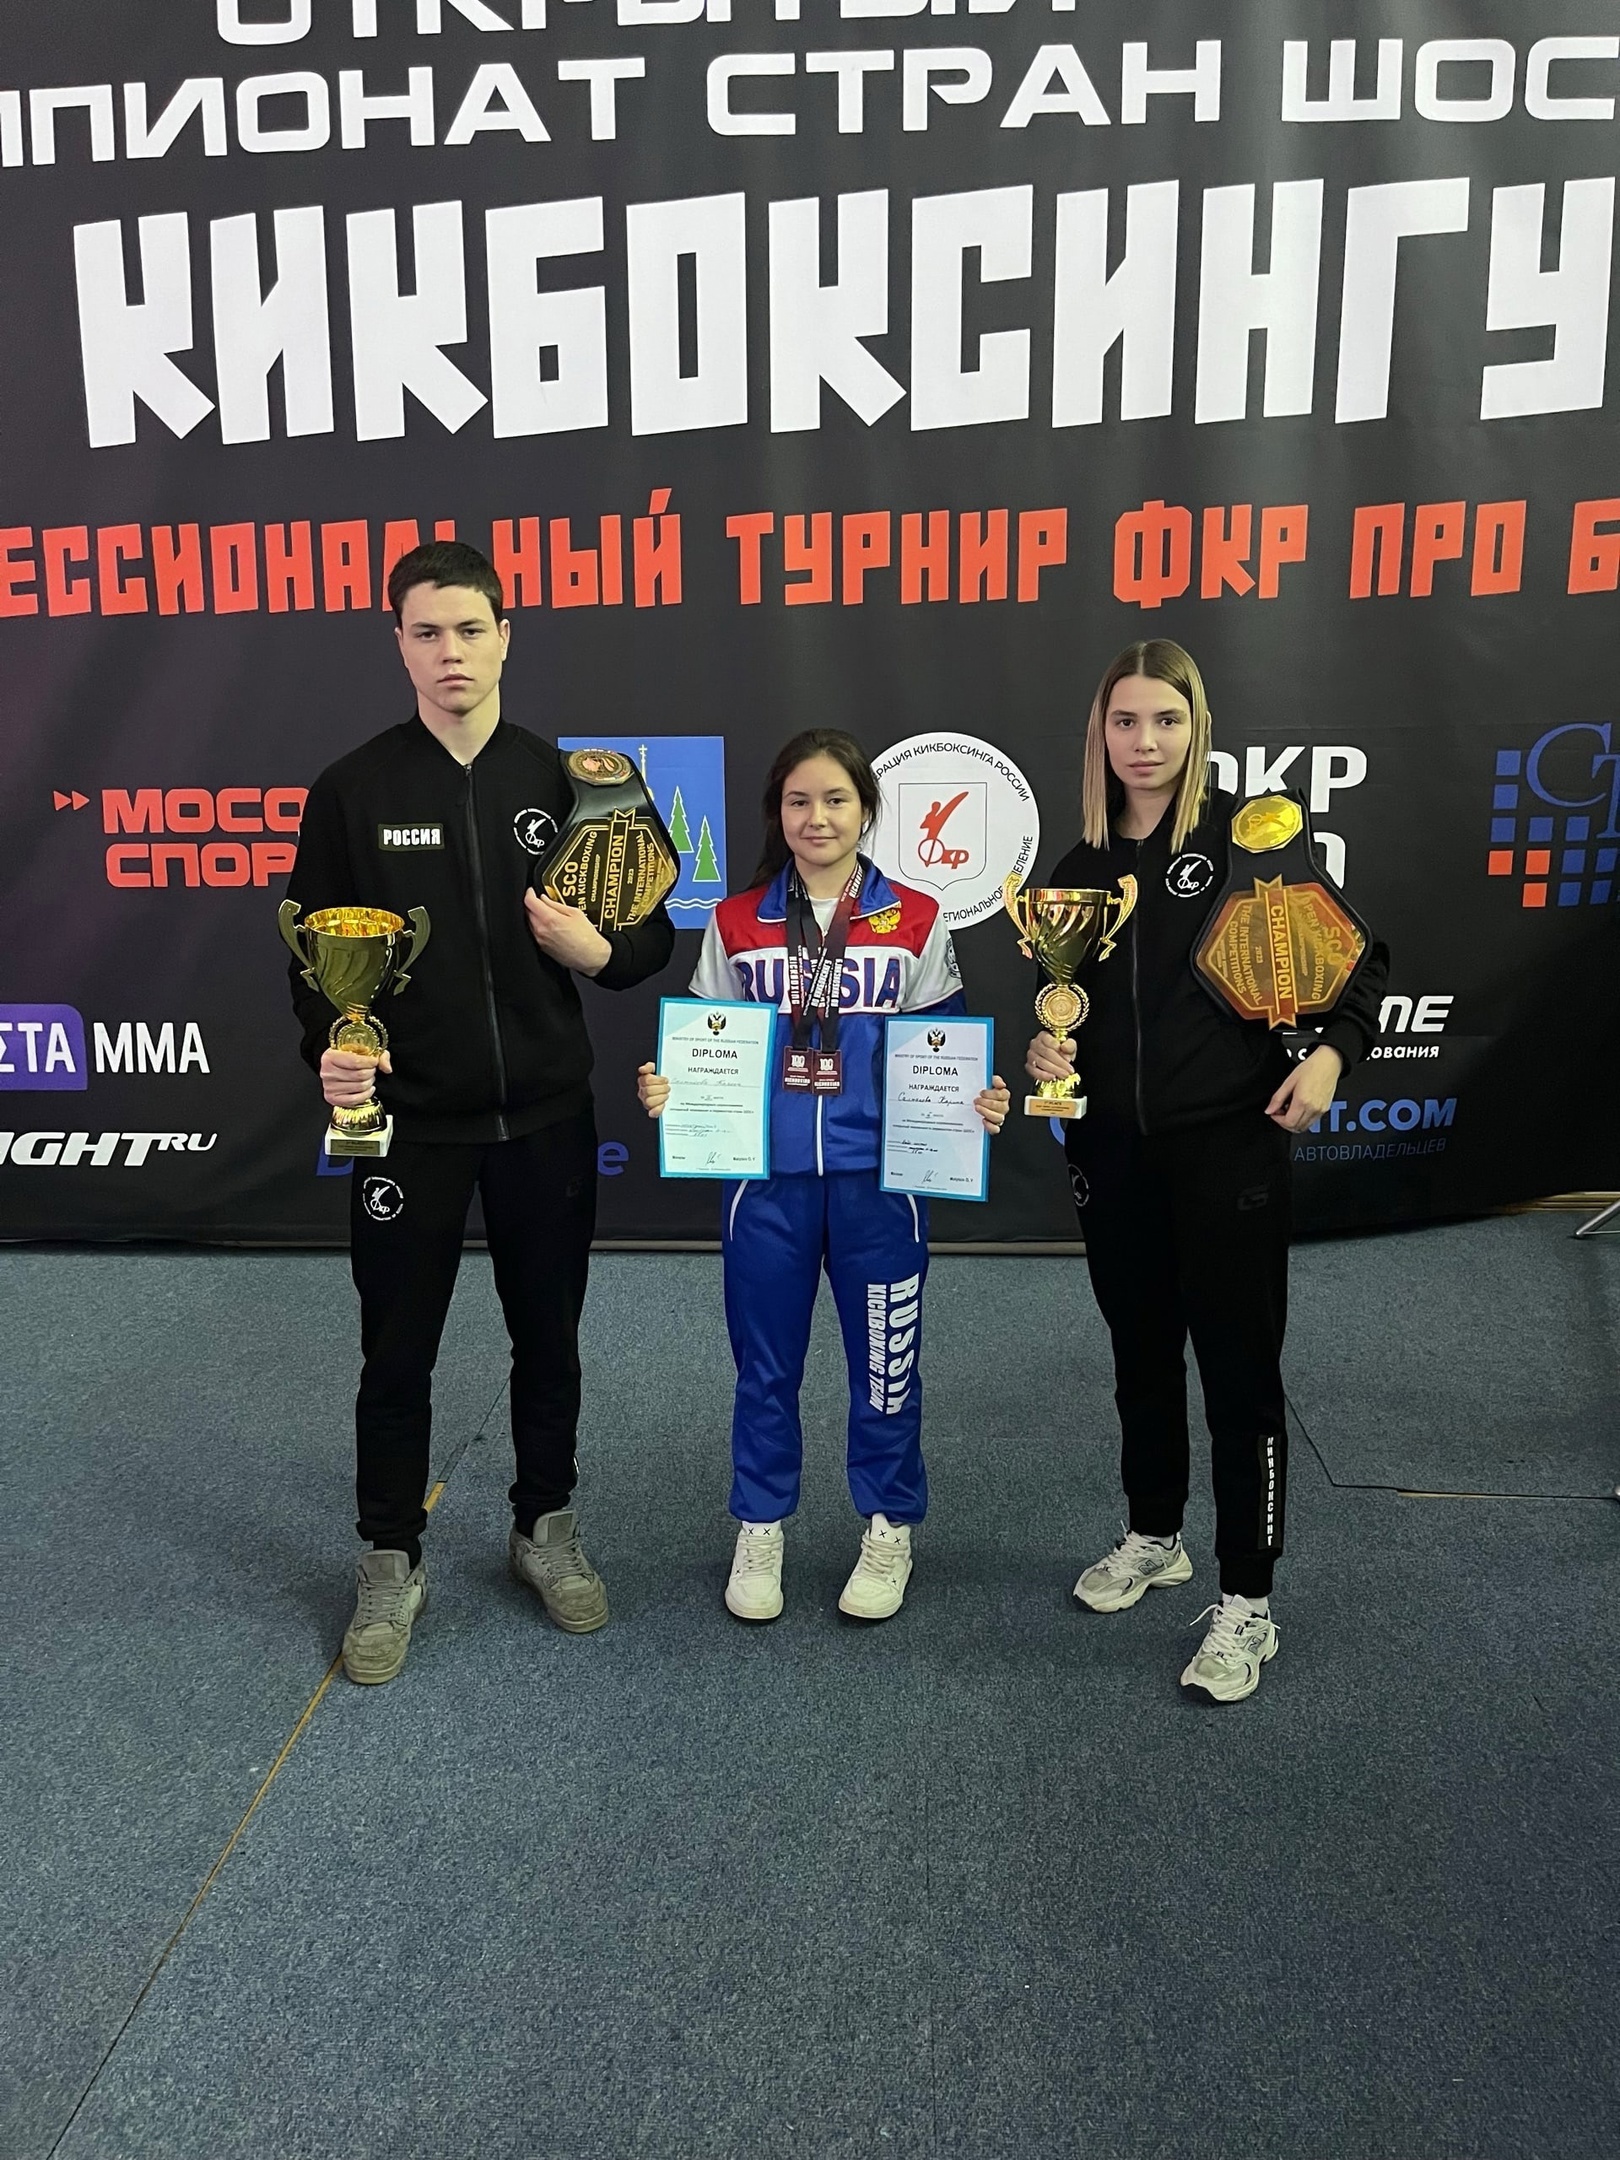 С 25 по 28 октября в г.Раменское проходил открытый чемпионат стран ШОС по кикбоксингу.